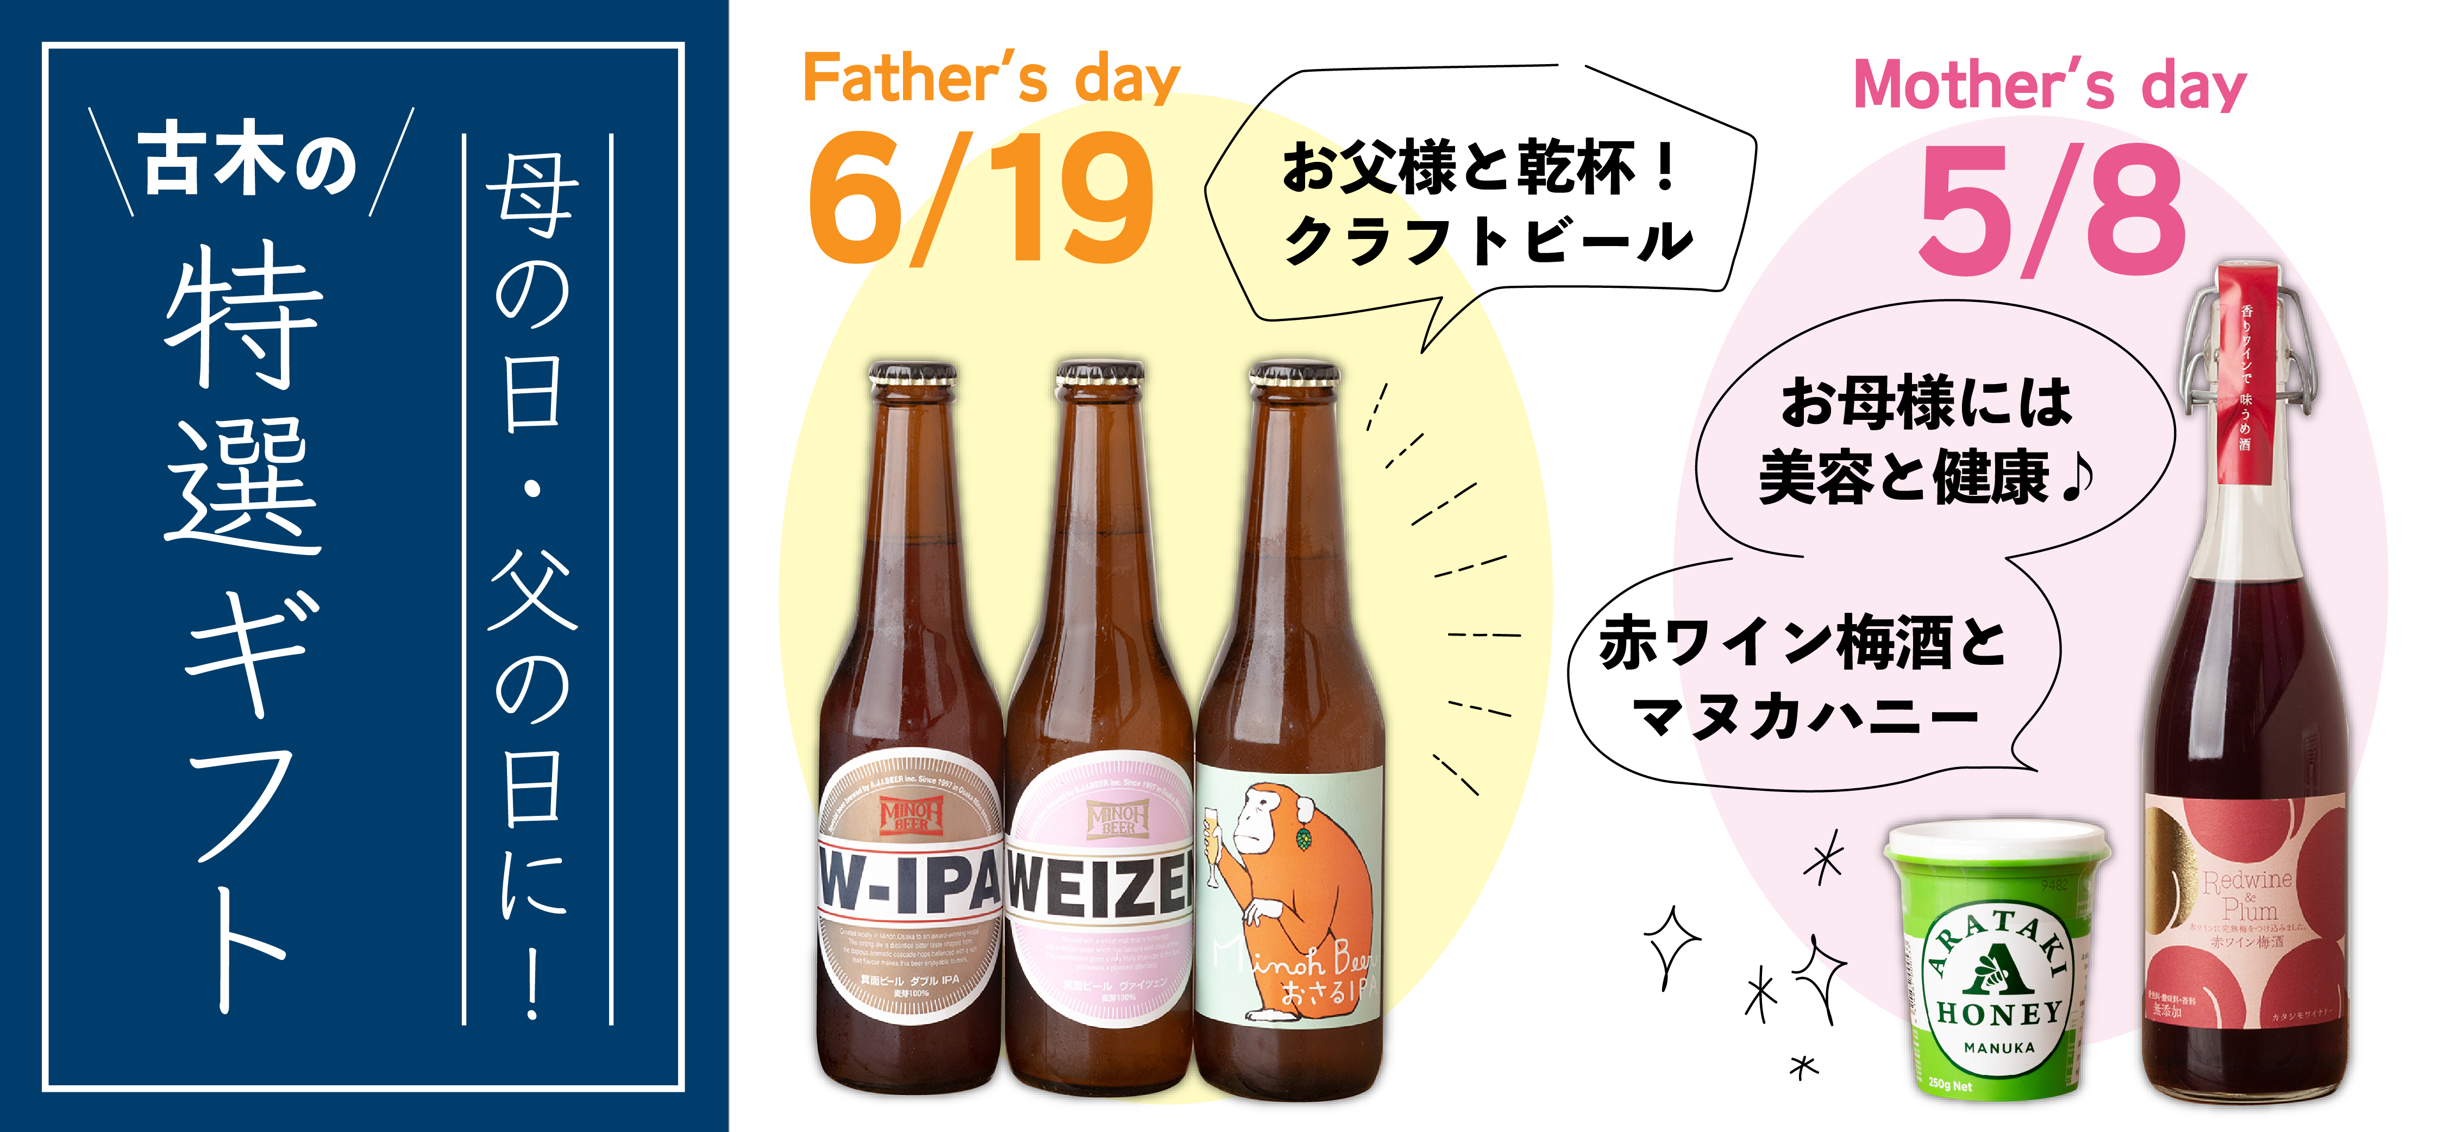 6月19日は『父の日』父の日にお父さんに感謝の気持ちの贈り物♪お酒ギフト承ります。